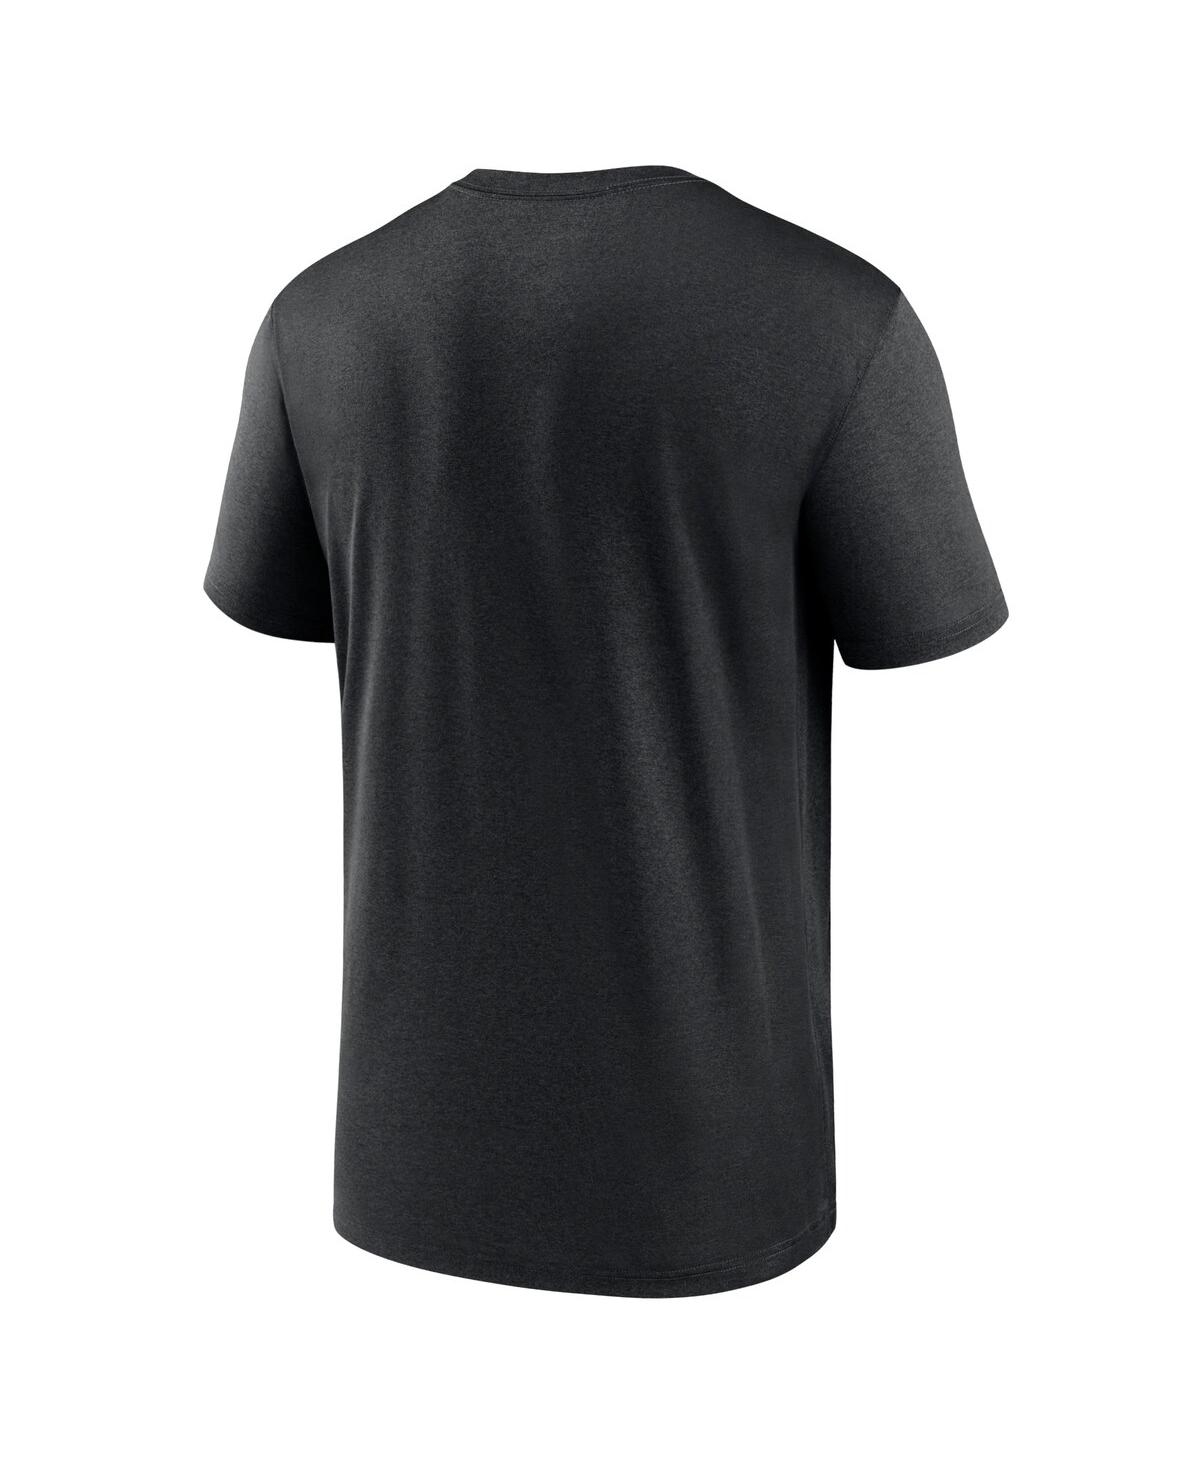 Shop Nike Men's  Black Chicago White Sox City Connect Logo T-shirt